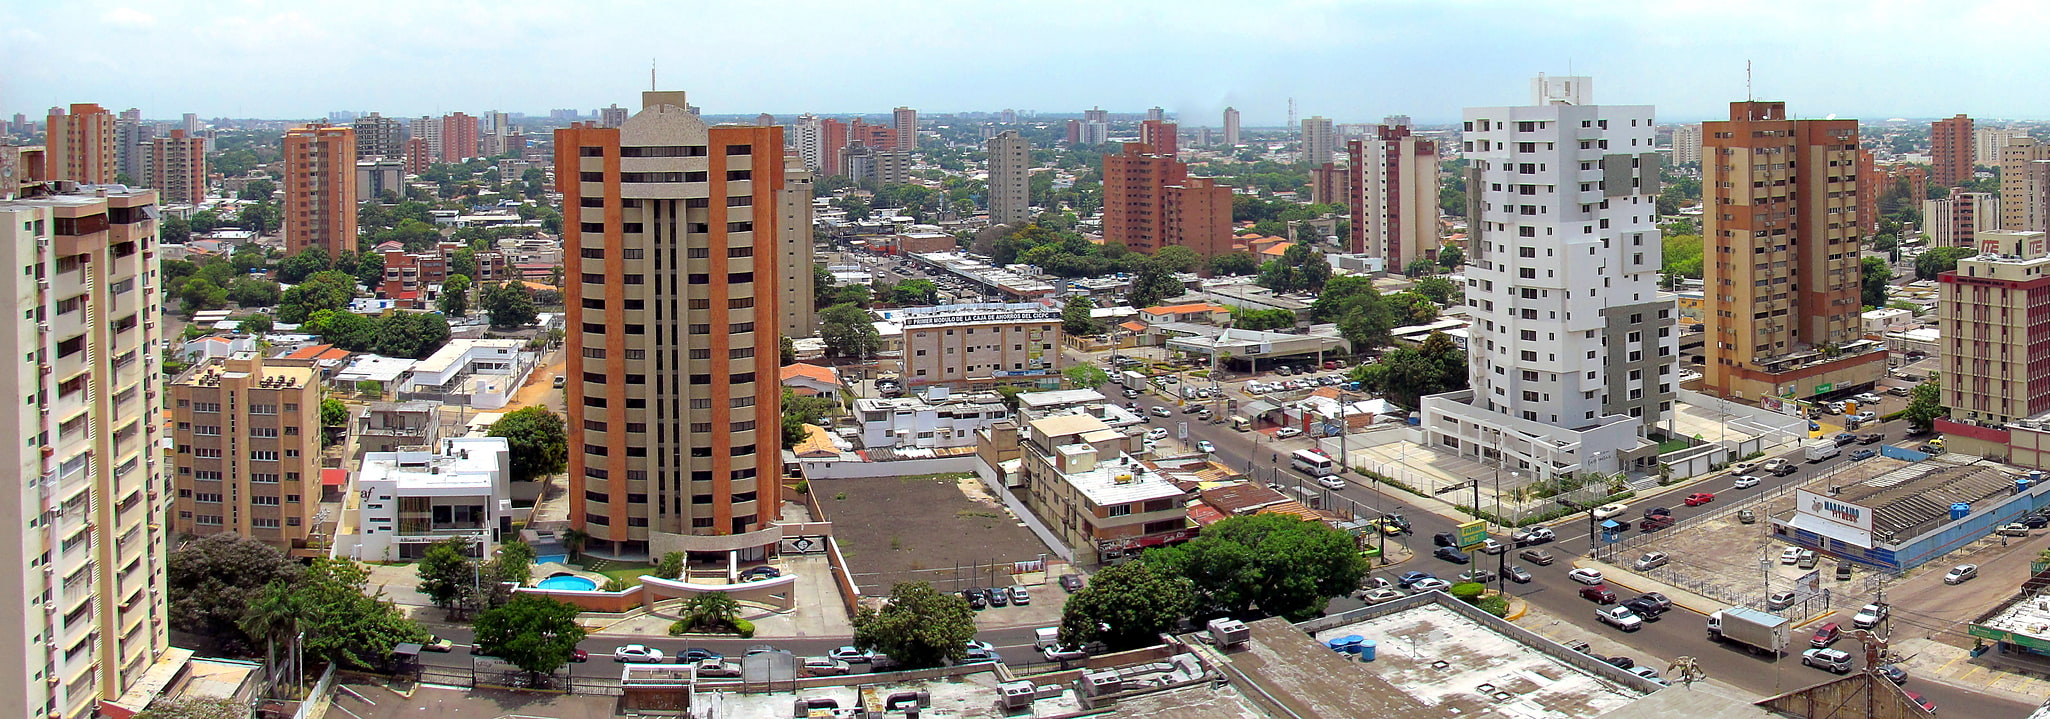 Maracaibo, Venezuela